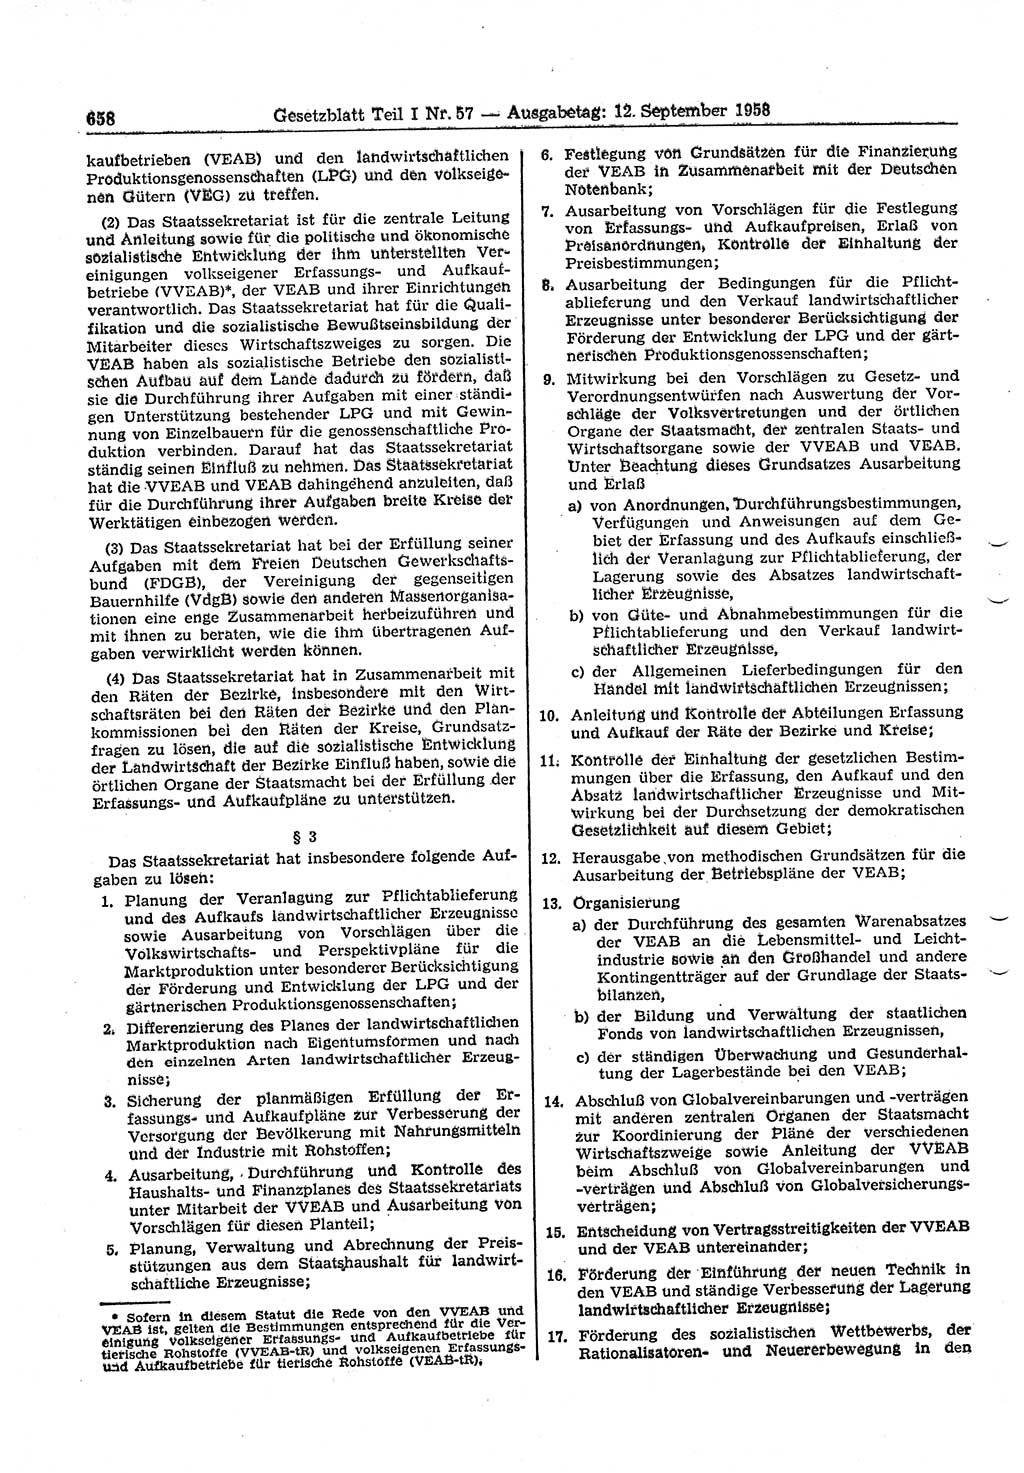 Gesetzblatt (GBl.) der Deutschen Demokratischen Republik (DDR) Teil Ⅰ 1958, Seite 658 (GBl. DDR Ⅰ 1958, S. 658)